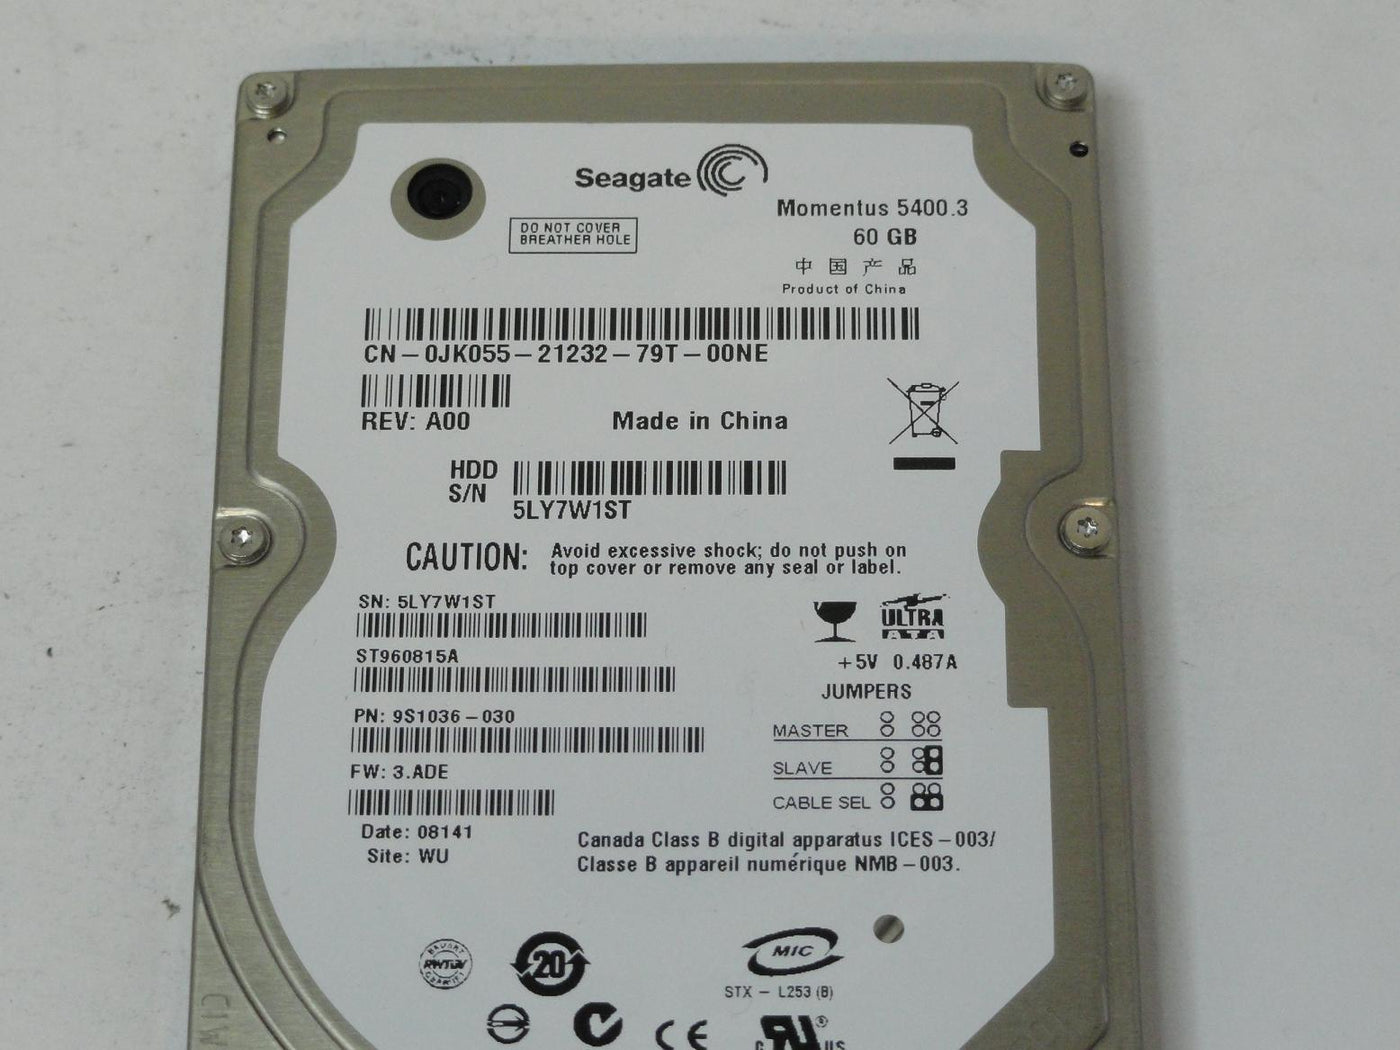 MC6387_9S1036-030_Seagate Dell 60GB IDE 5400rpm 2.5in HDD - Image3